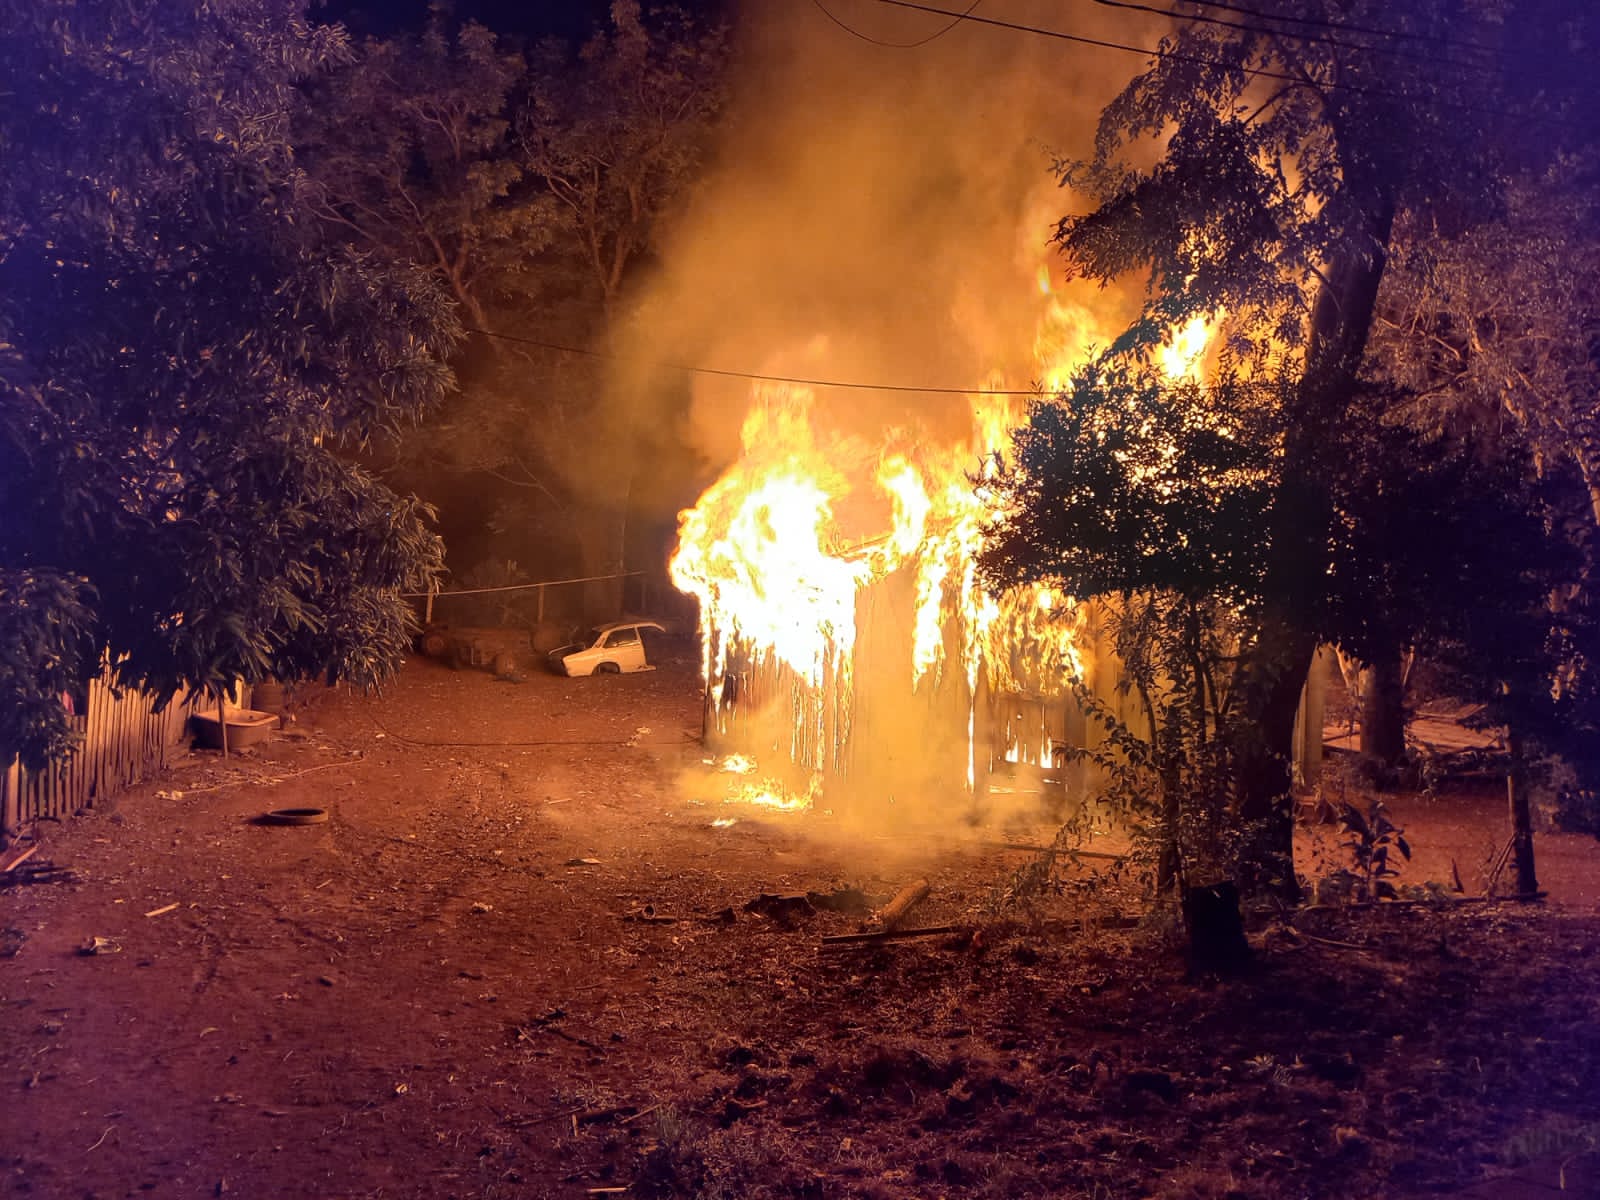 Guaraní: Vivienda familiar fue consumida totalmente en un incendio, no se registraron lesionados imagen-1